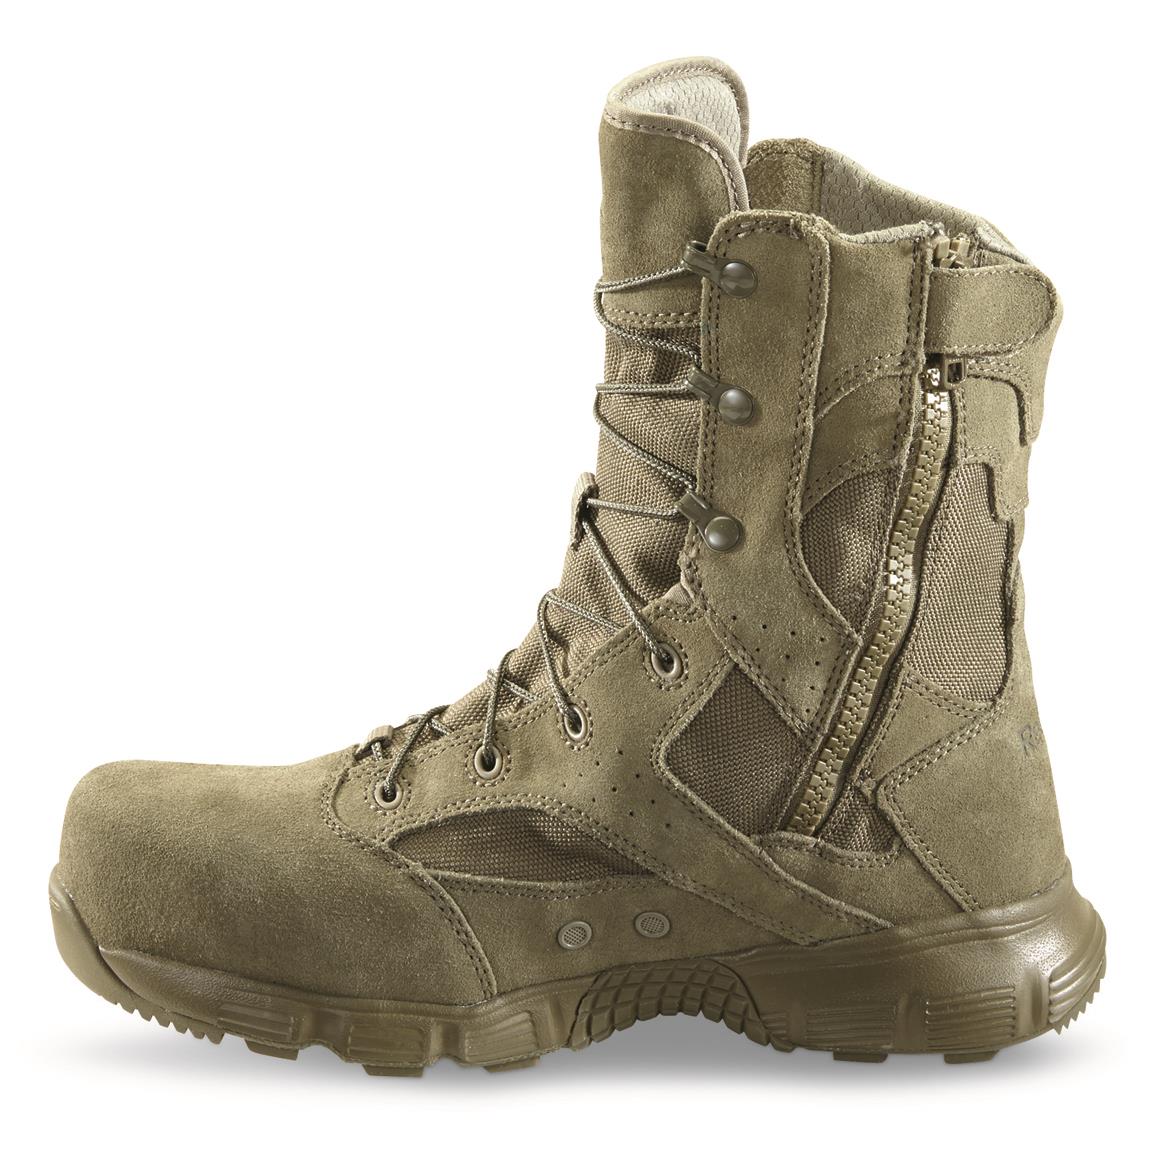 reebok men's 8 dauntless composite toe combat boot